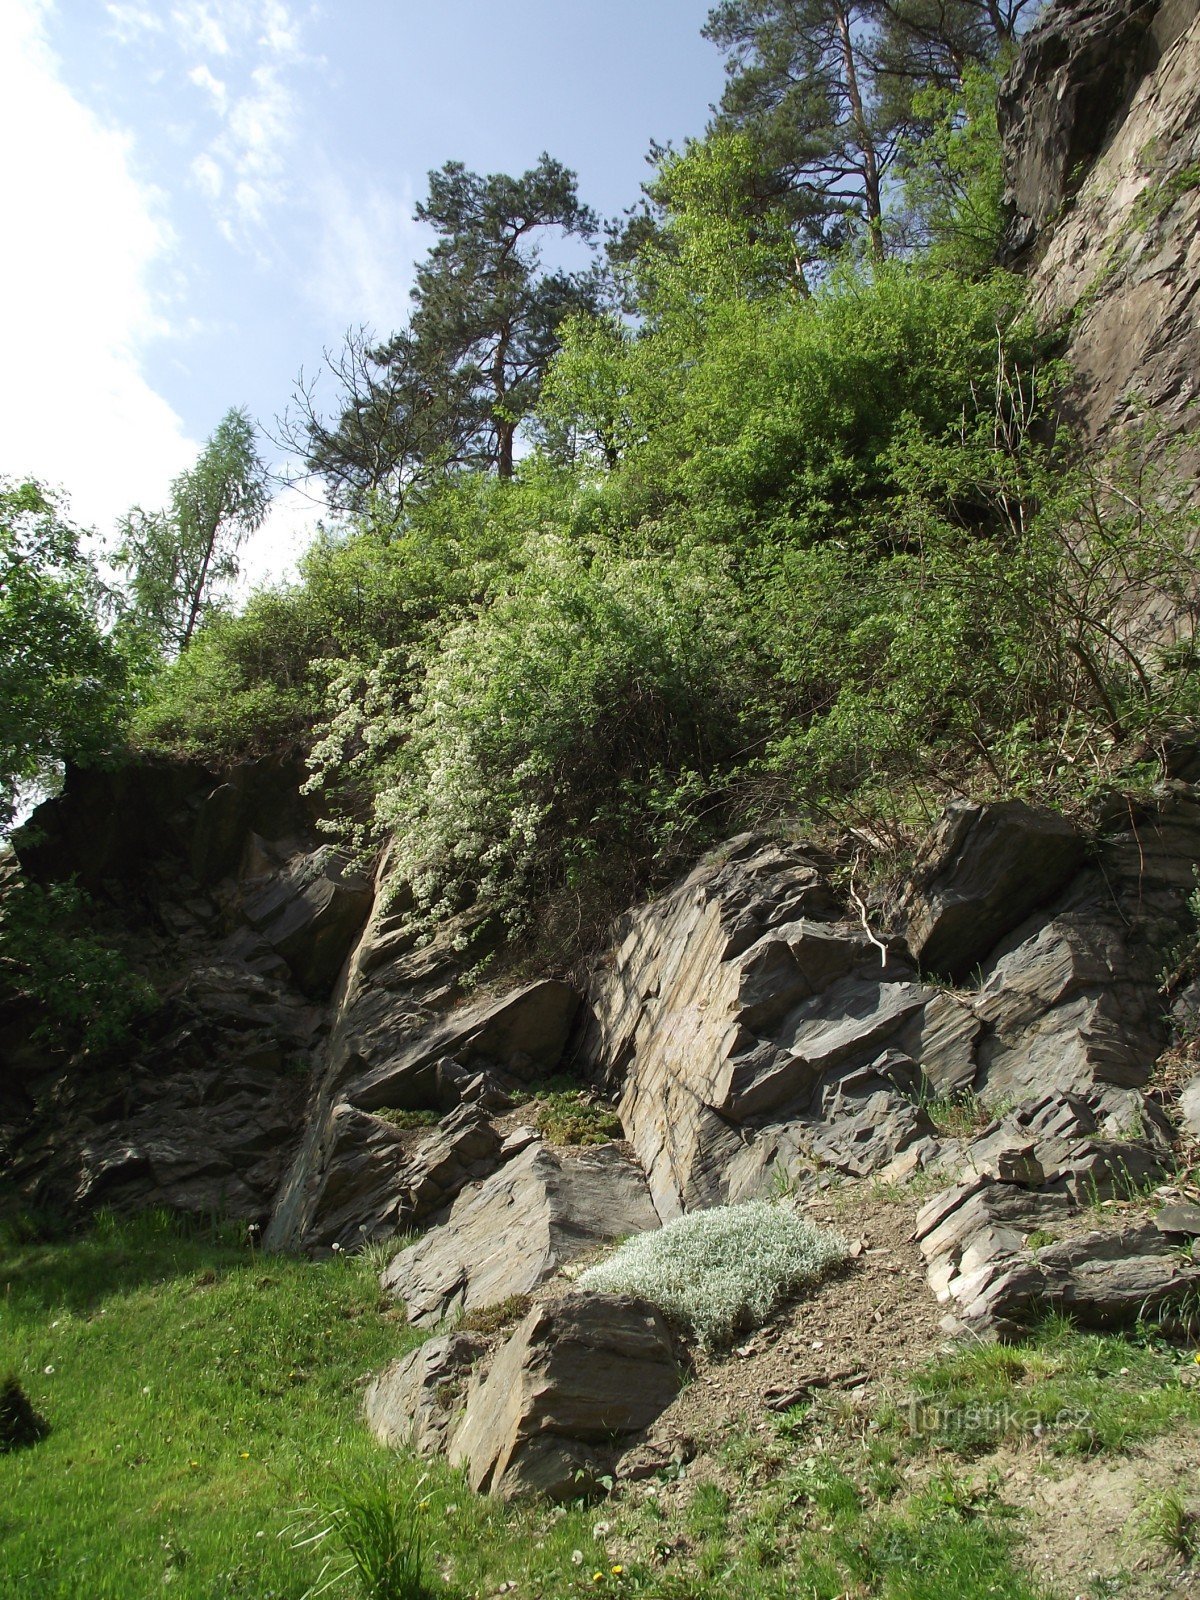 Bohutín – quarry under Burdový vrch